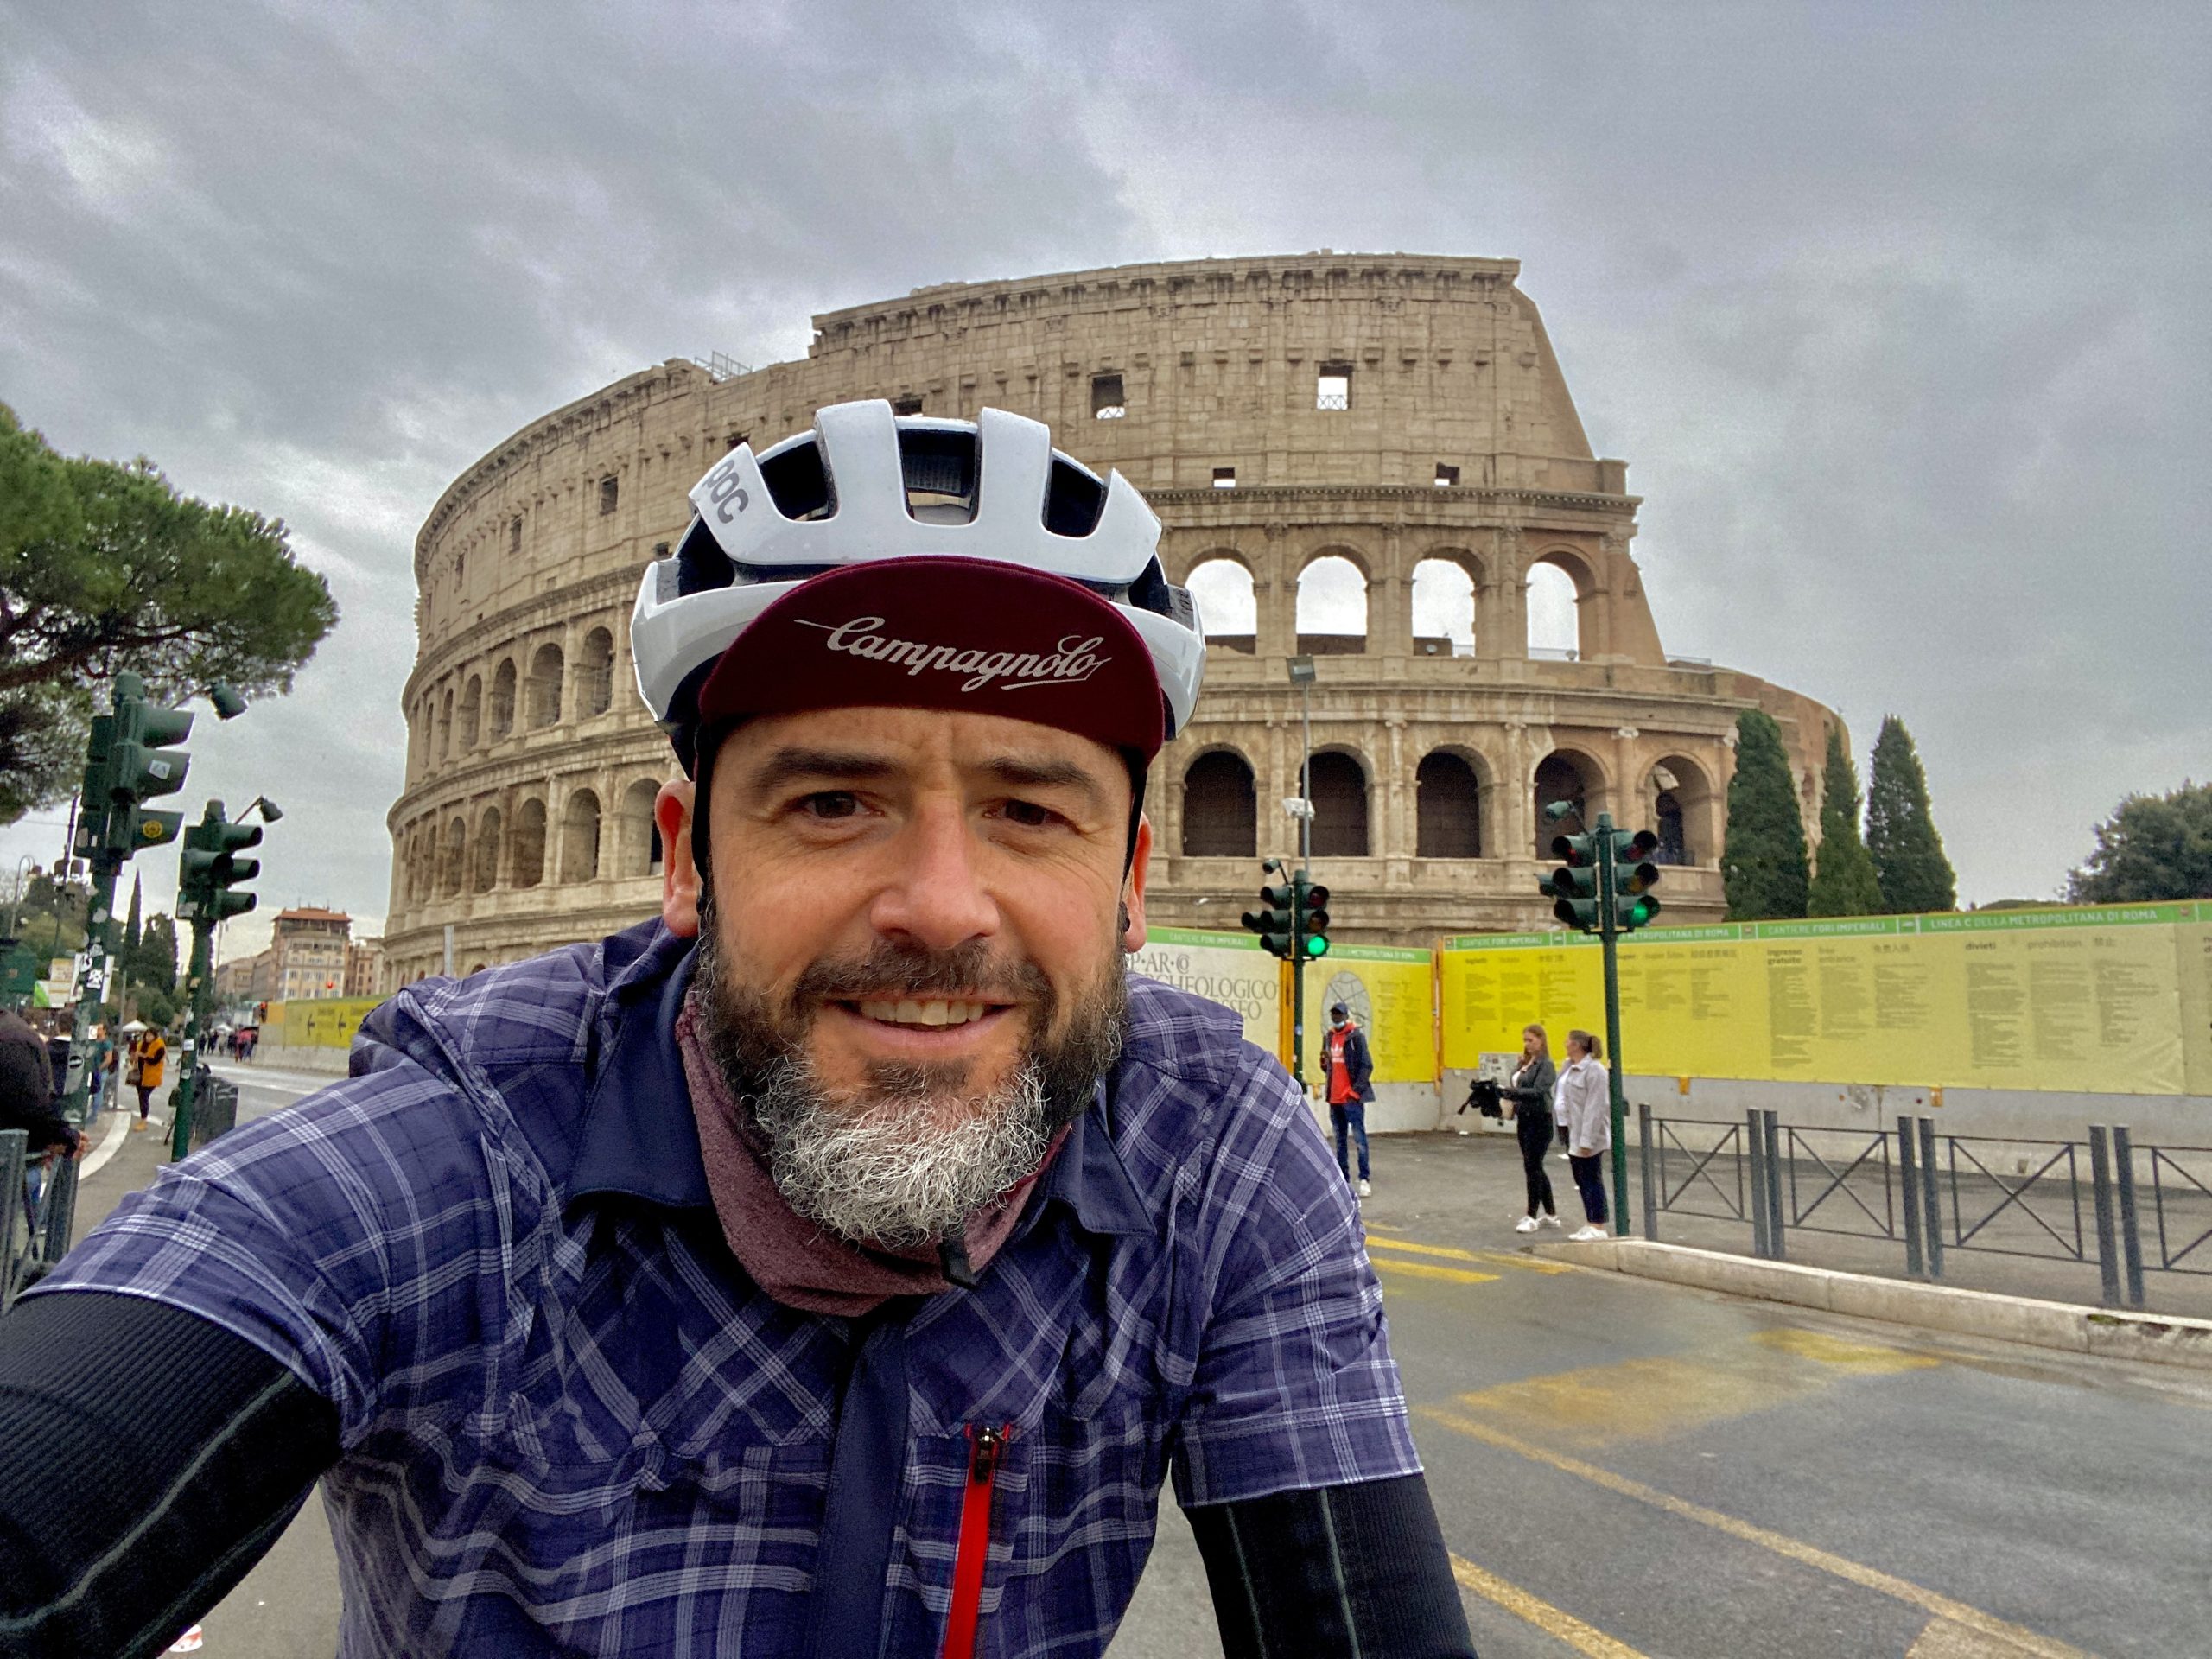 cicloturismo in italia, cicloviaggio in Italia, cicloviaggi, viaggiatore lento, viaggiare in bici, Roma in bici, viaggiare in bicicletta, viaggi in bici italia